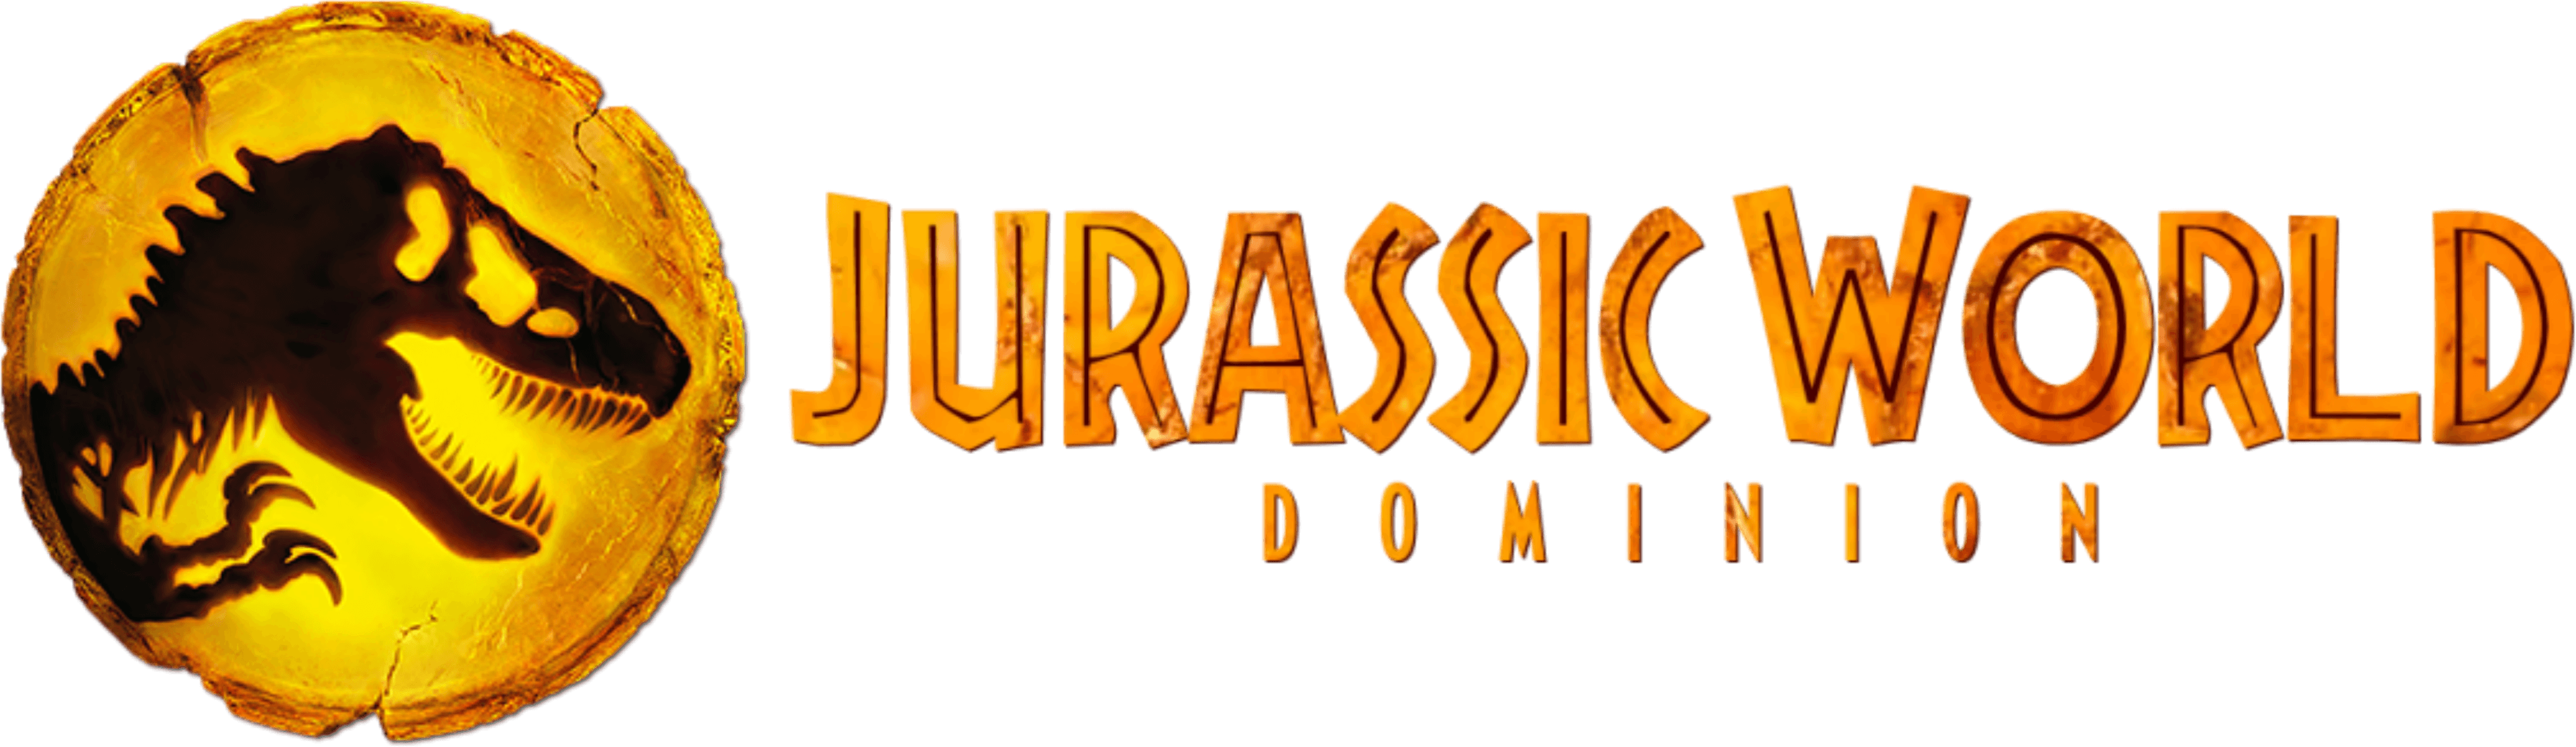 Jurassic World Dominion logo